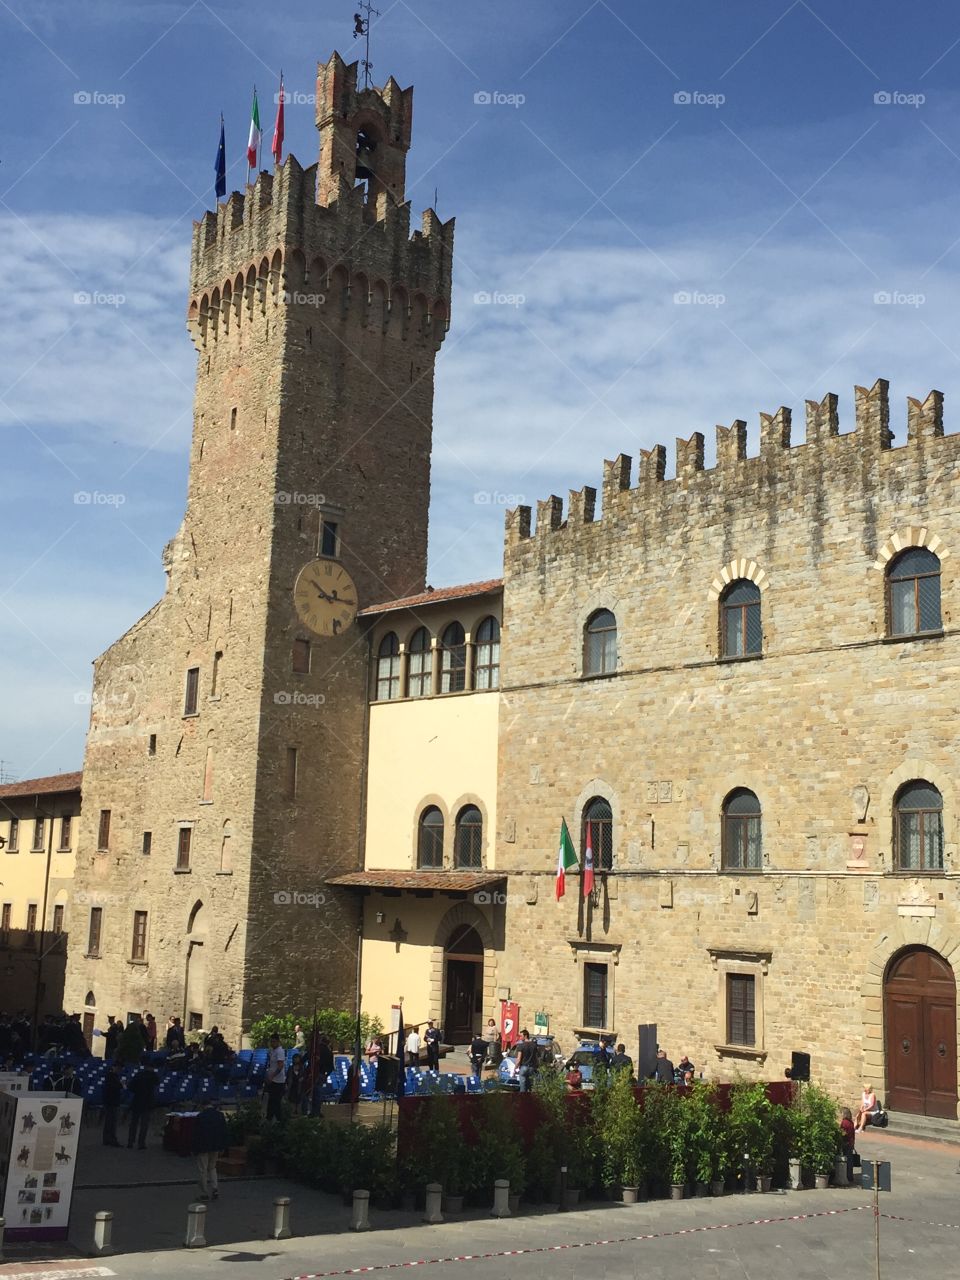 Castello in Arezzo, Italy 